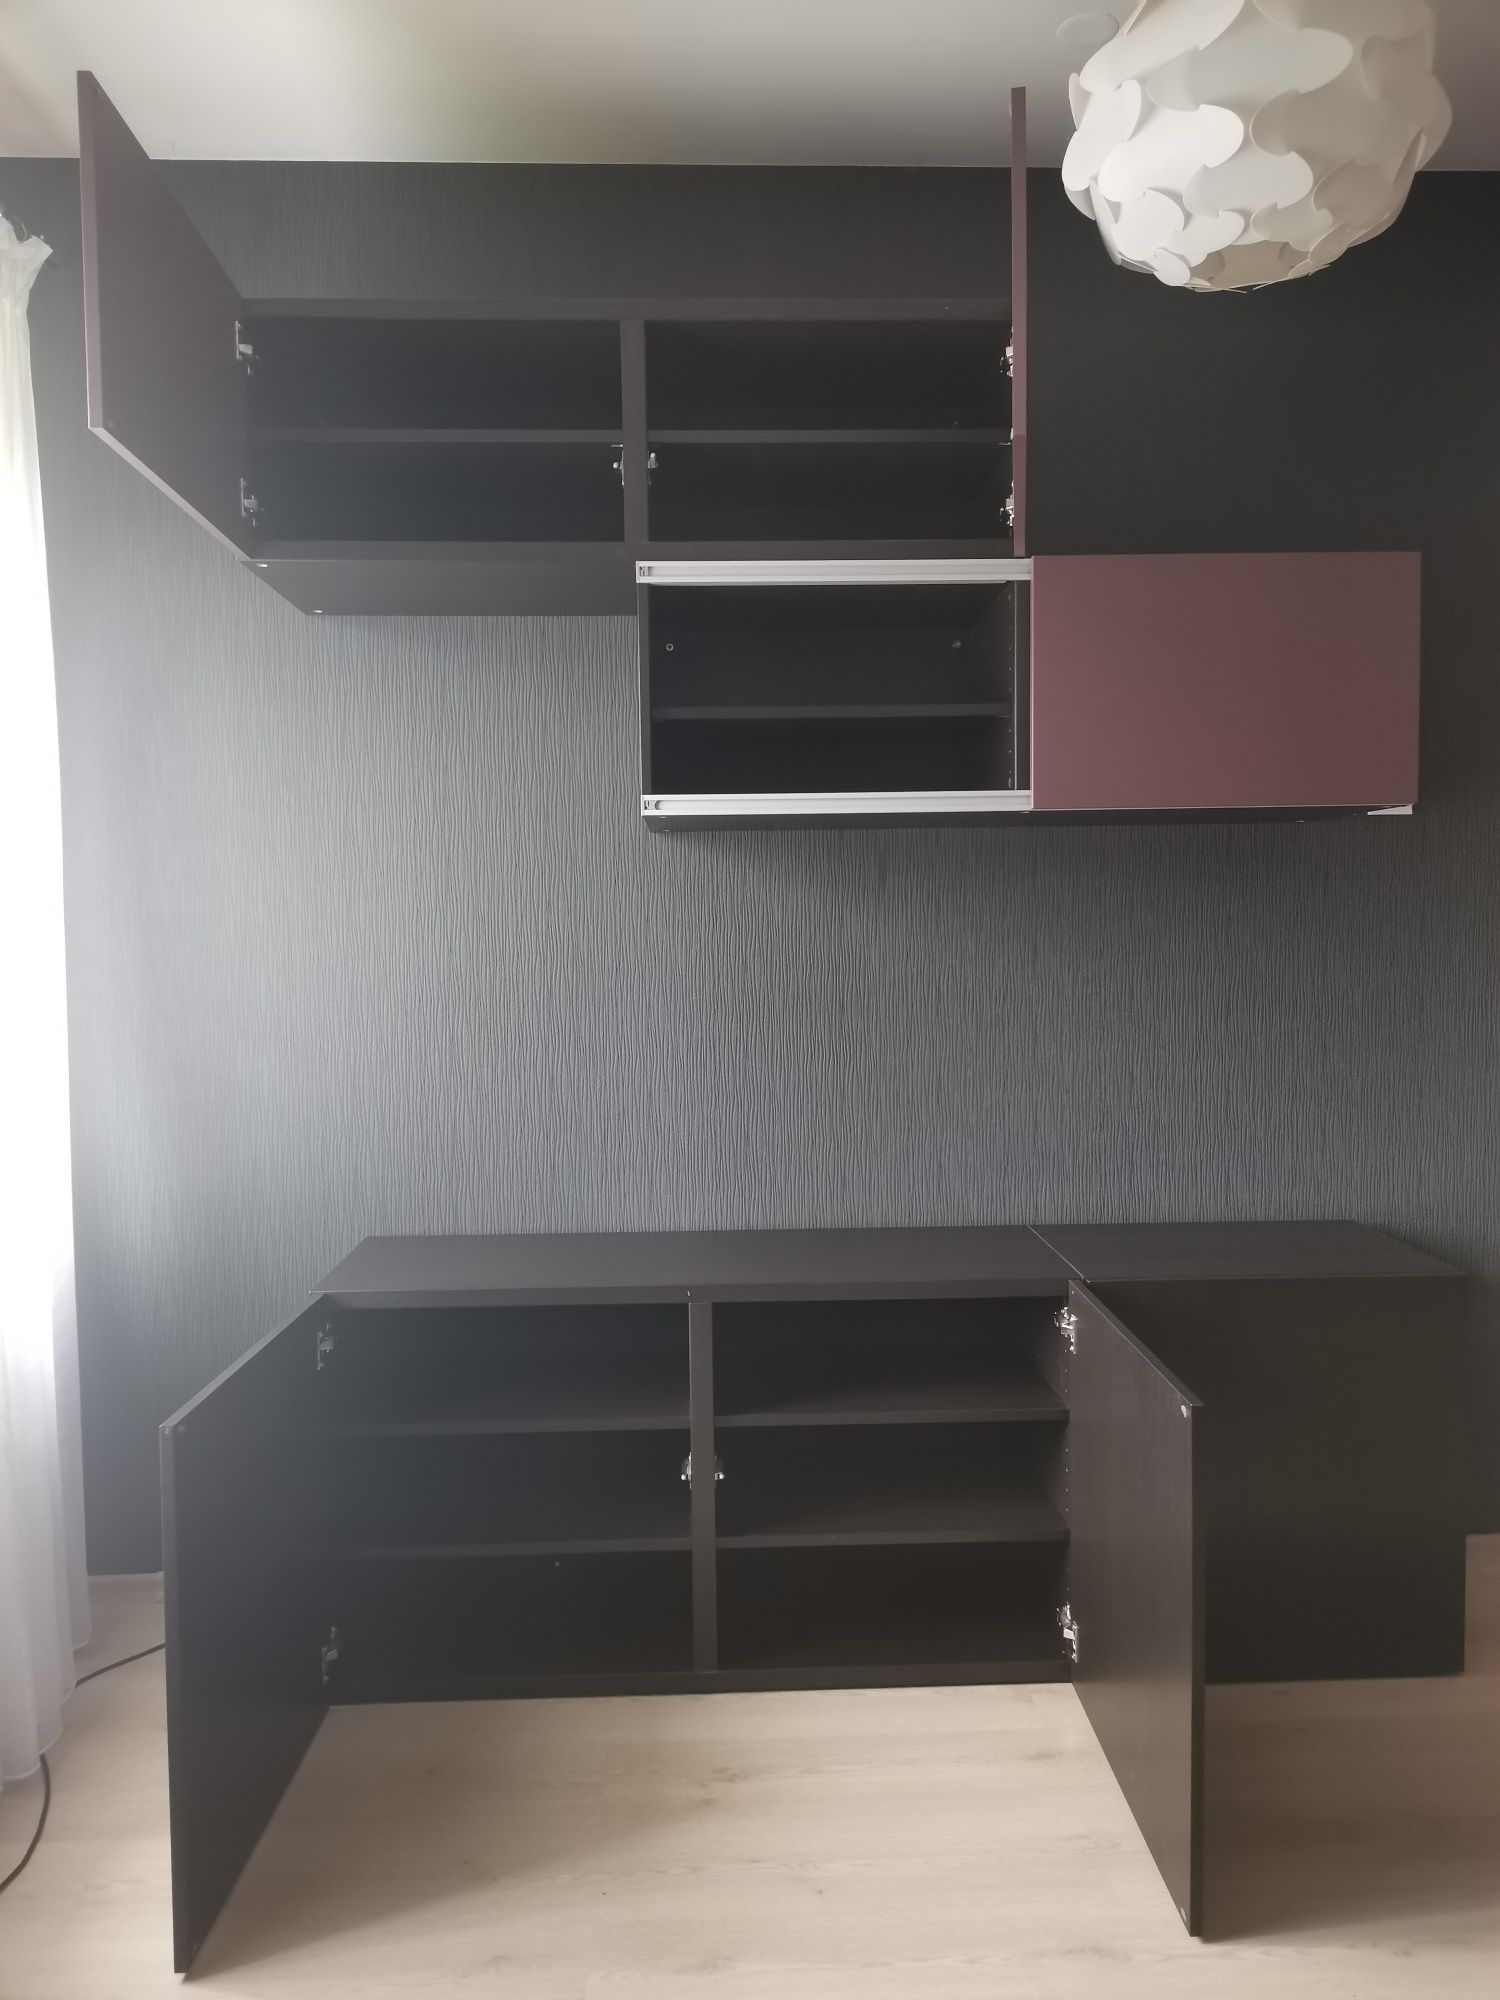 Meble modułowe pokojowe IKEA